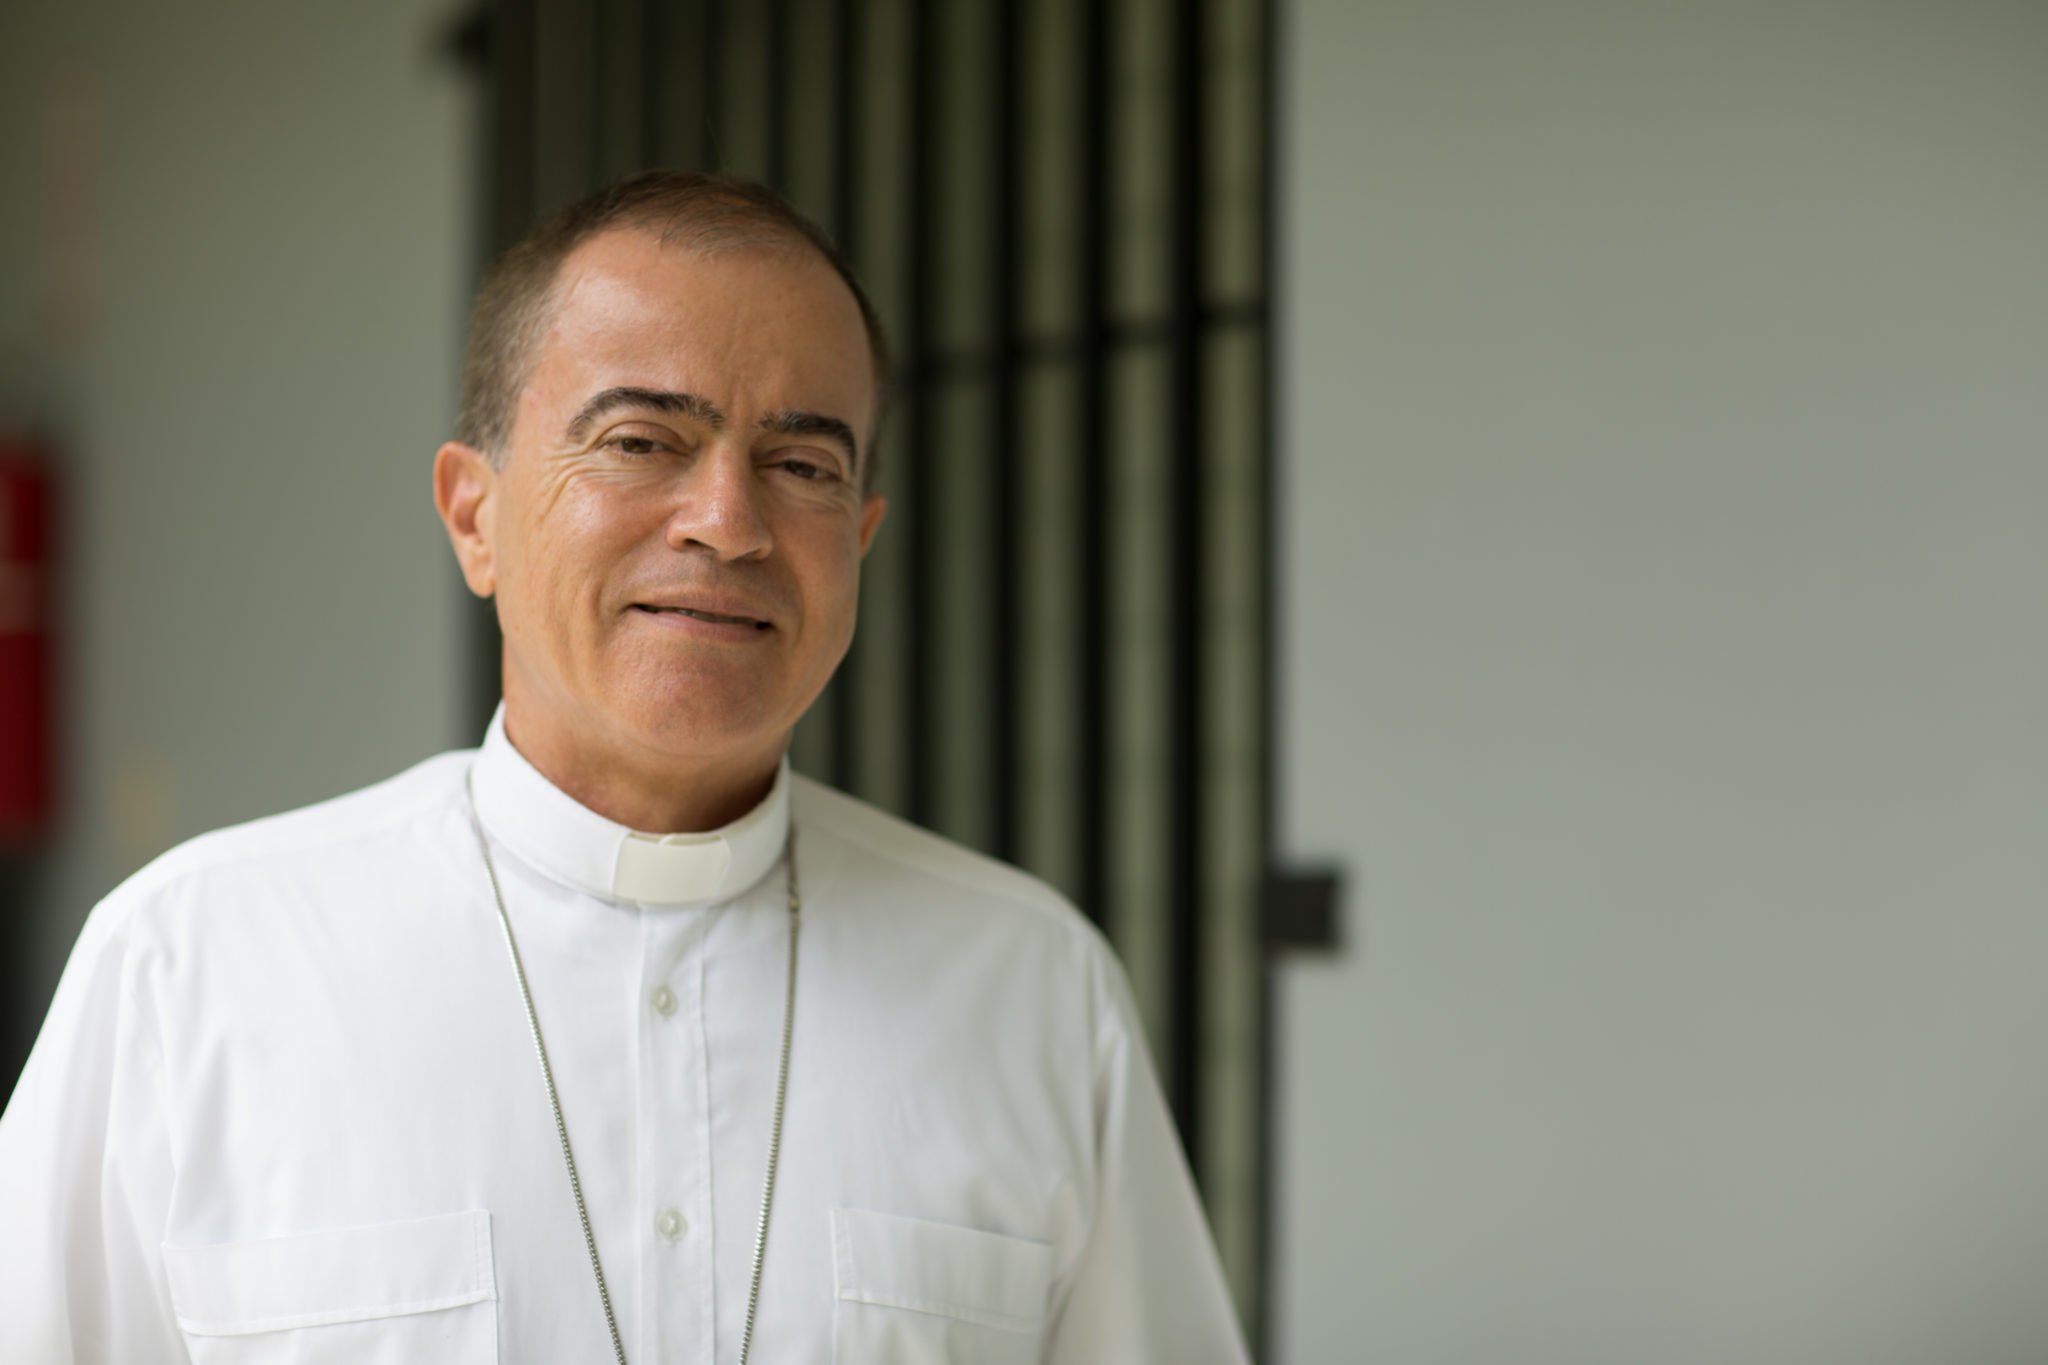 Monseñor González Nieves